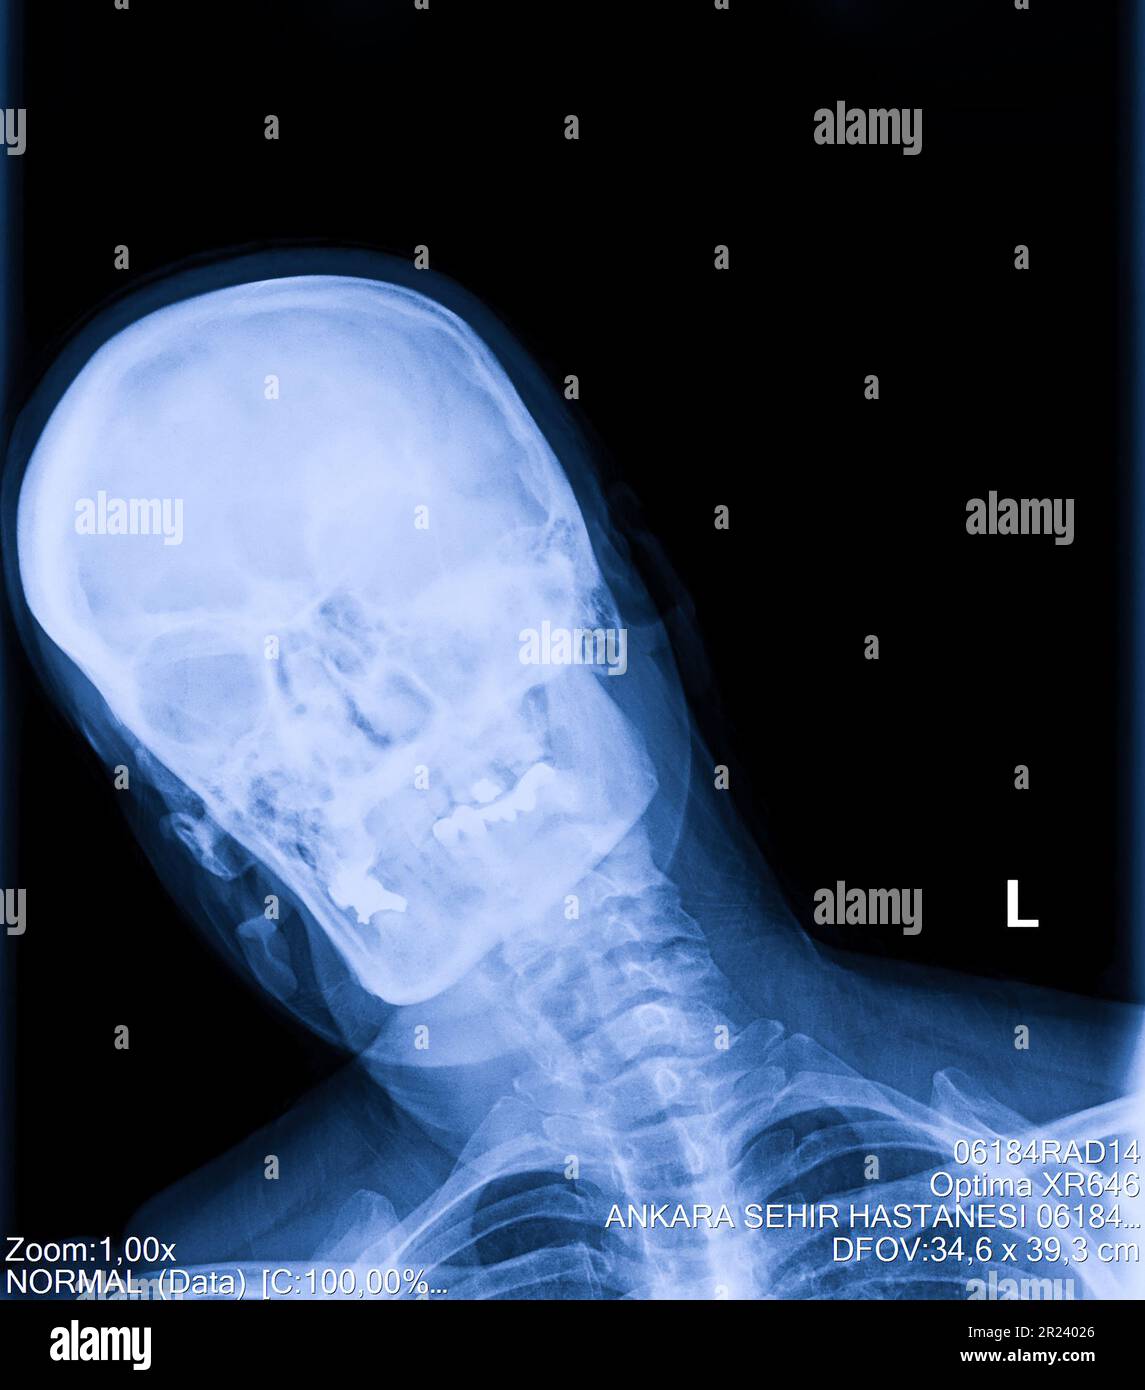 Radiografia della colonna cervicale umana, del collo Foto Stock